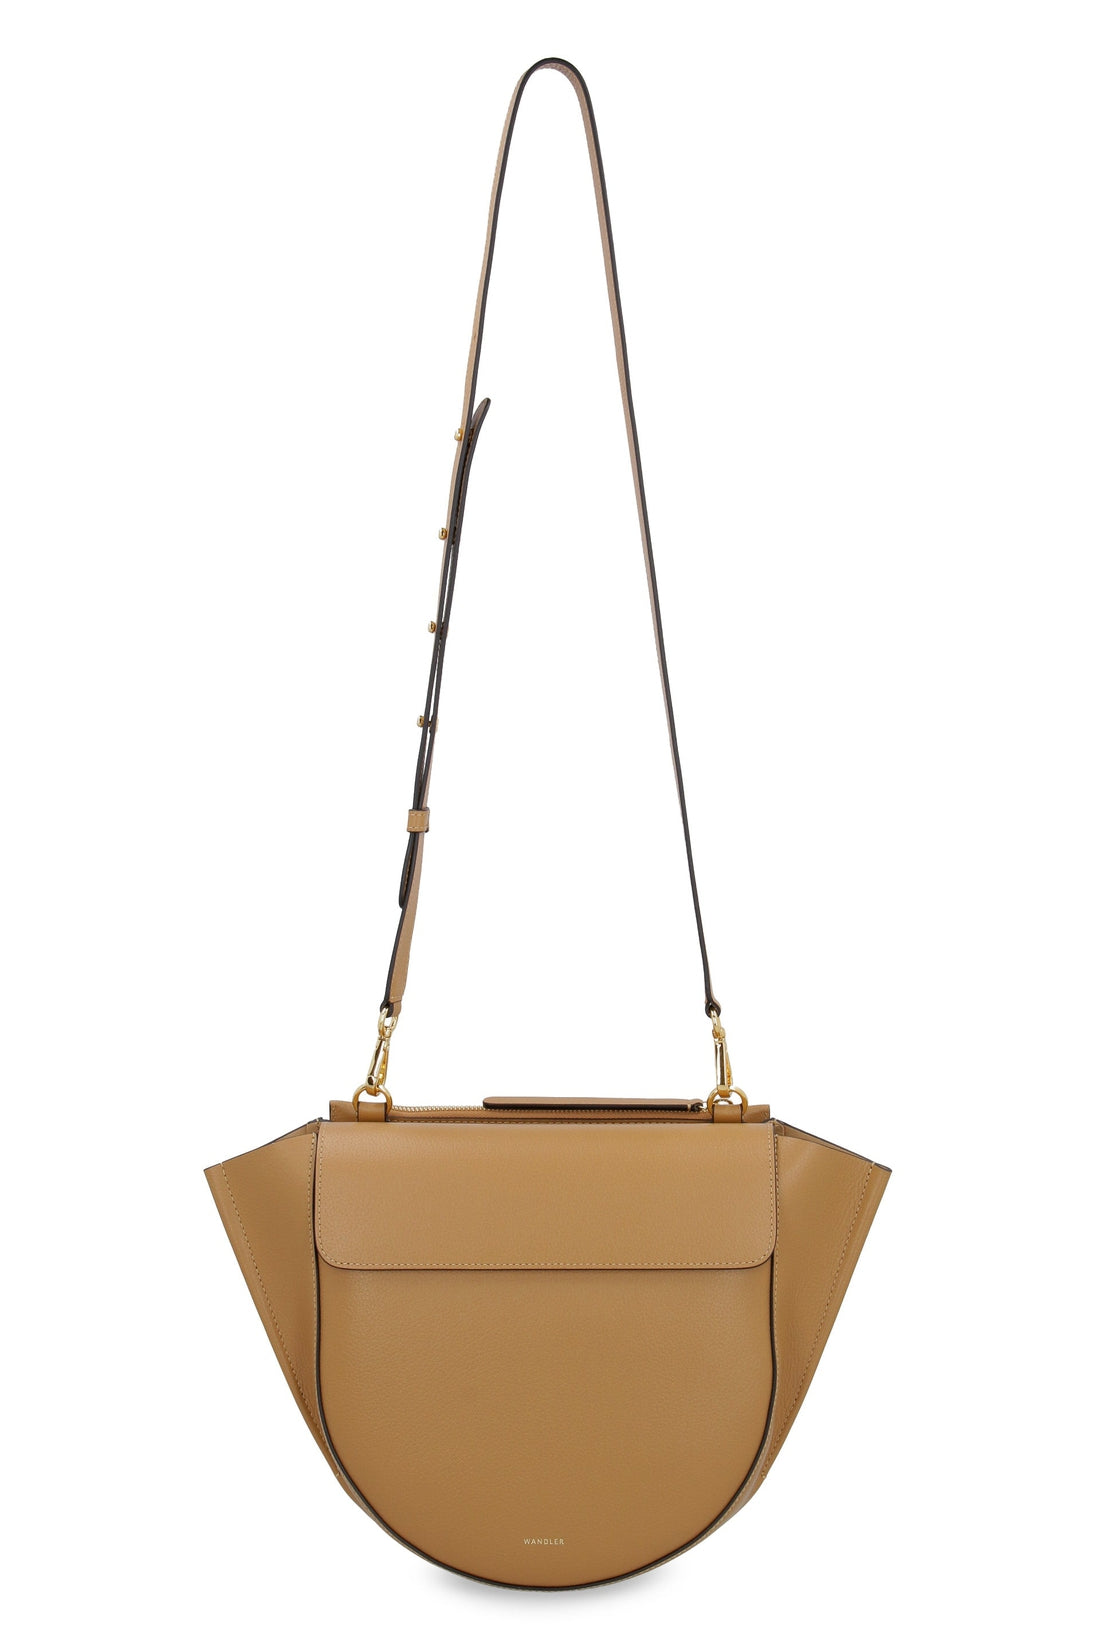 Wandler-OUTLET-SALE-Hortensia leather handbag-ARCHIVIST